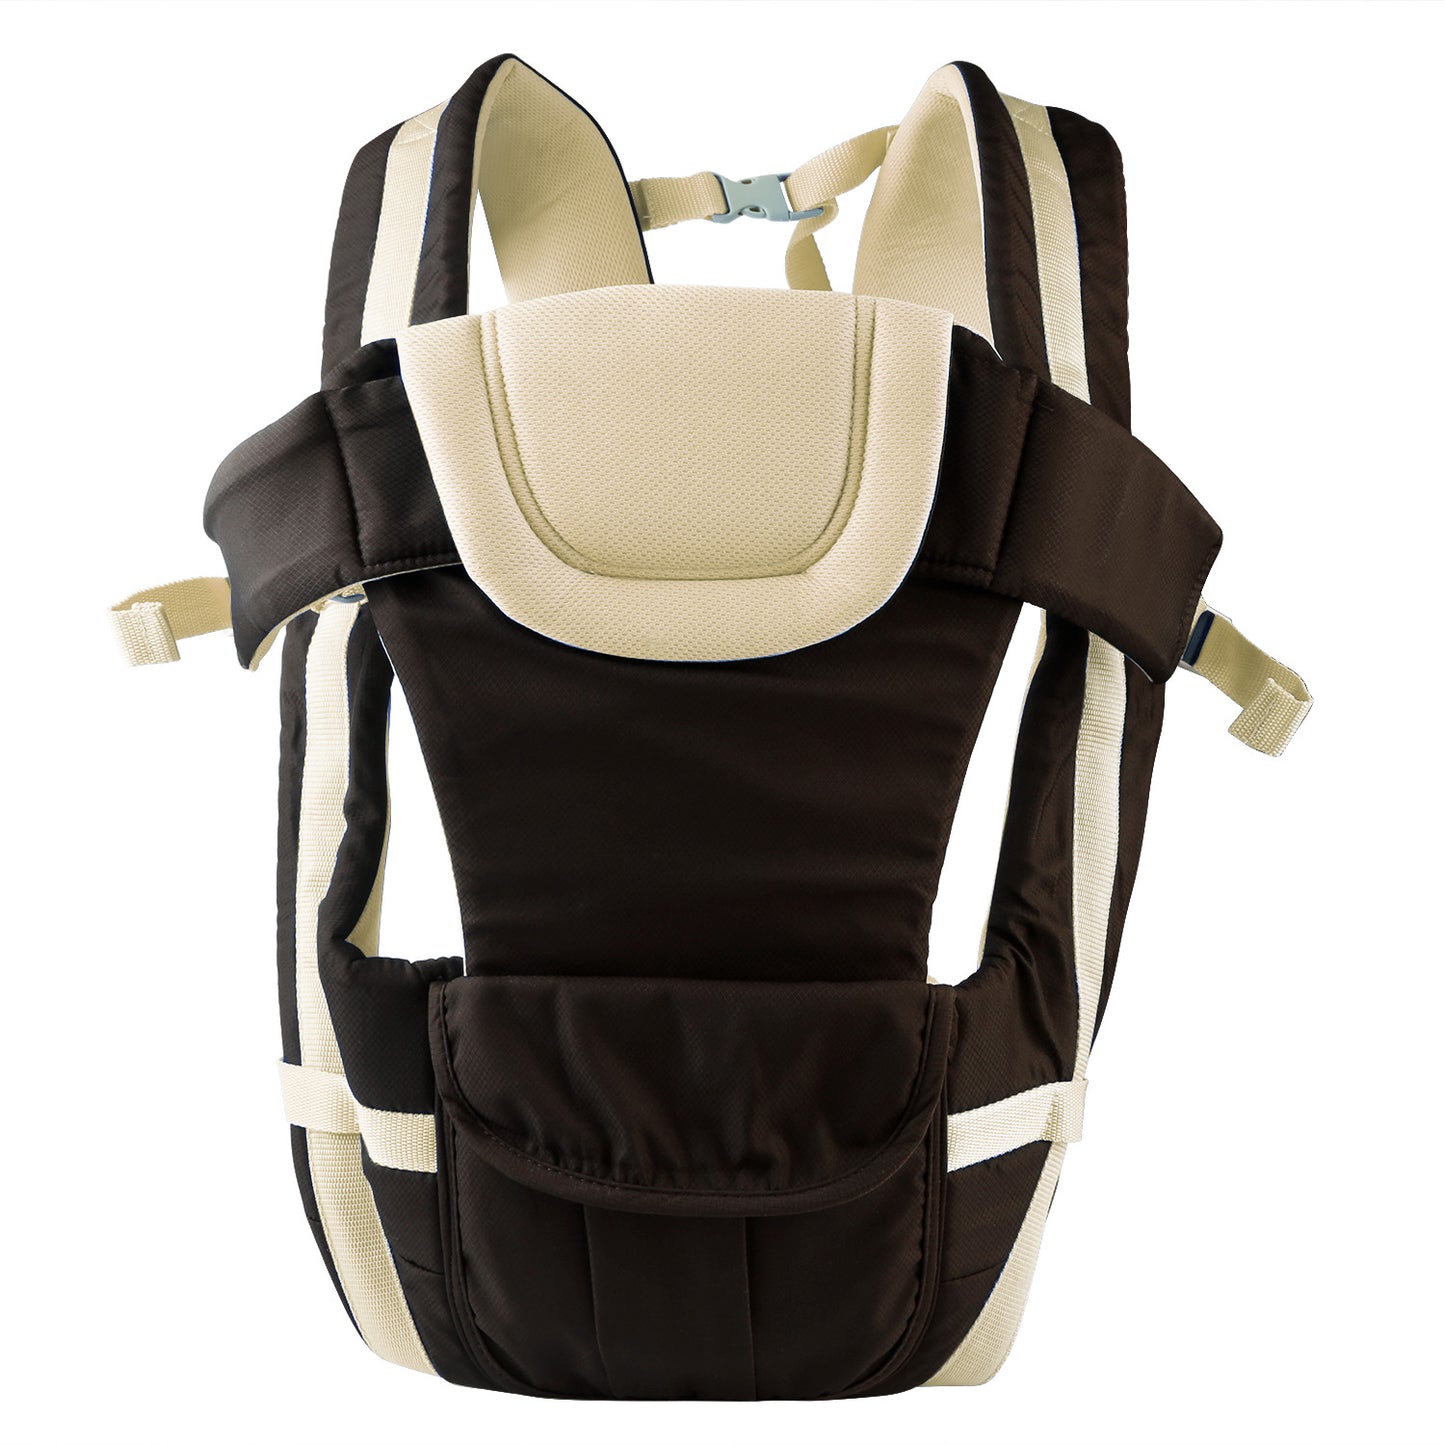 Baby Carrier Breathable Adjustable Wrap Sling Backpack Front Back Chest Infant Carrier Bag - Khaki -